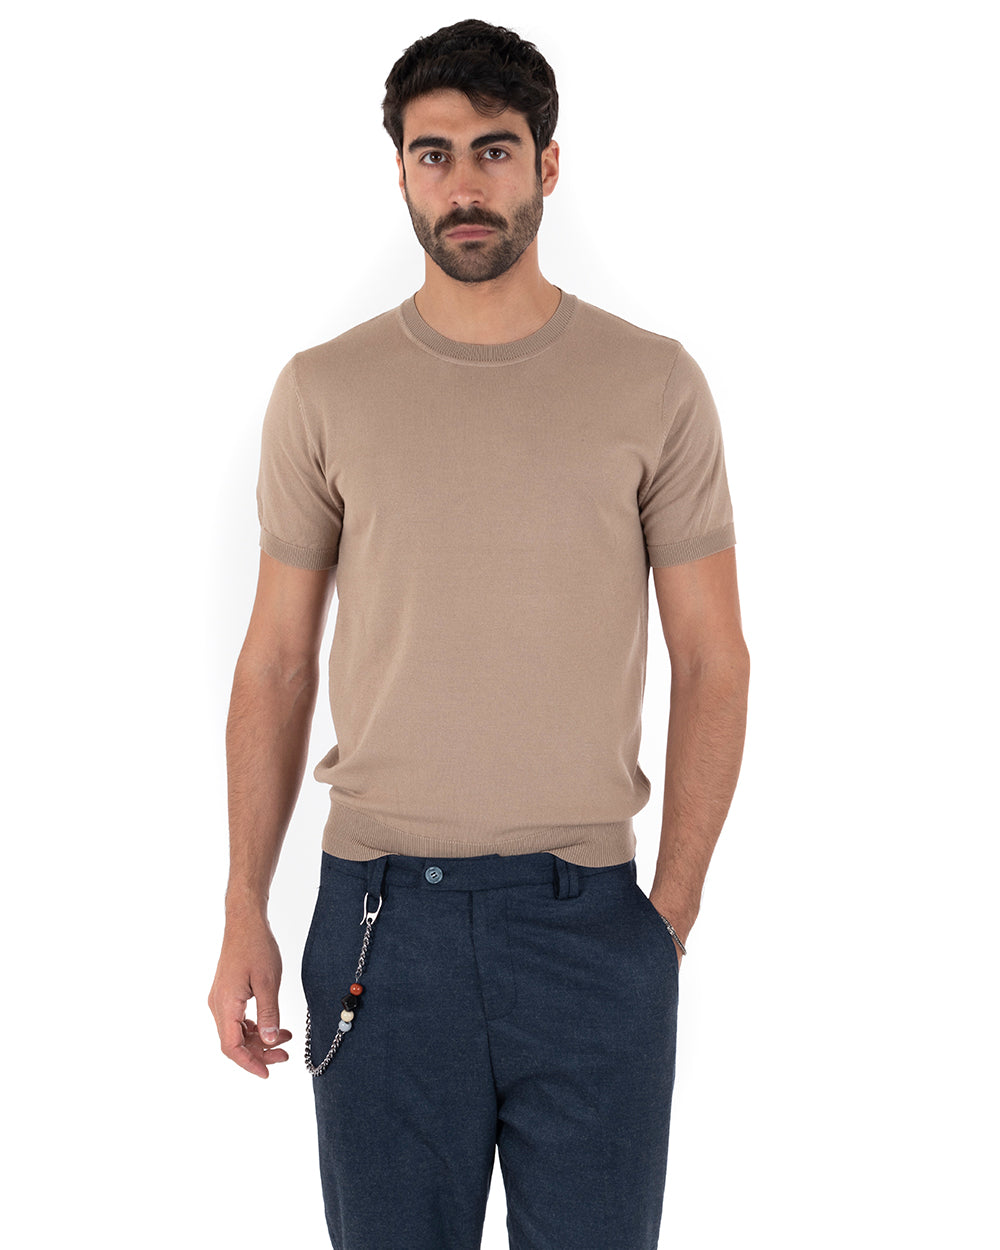 T-Shirt Uomo Manica Corta Tinta Unita Camel Girocollo Filo Casual GIOSAL-TS3053A